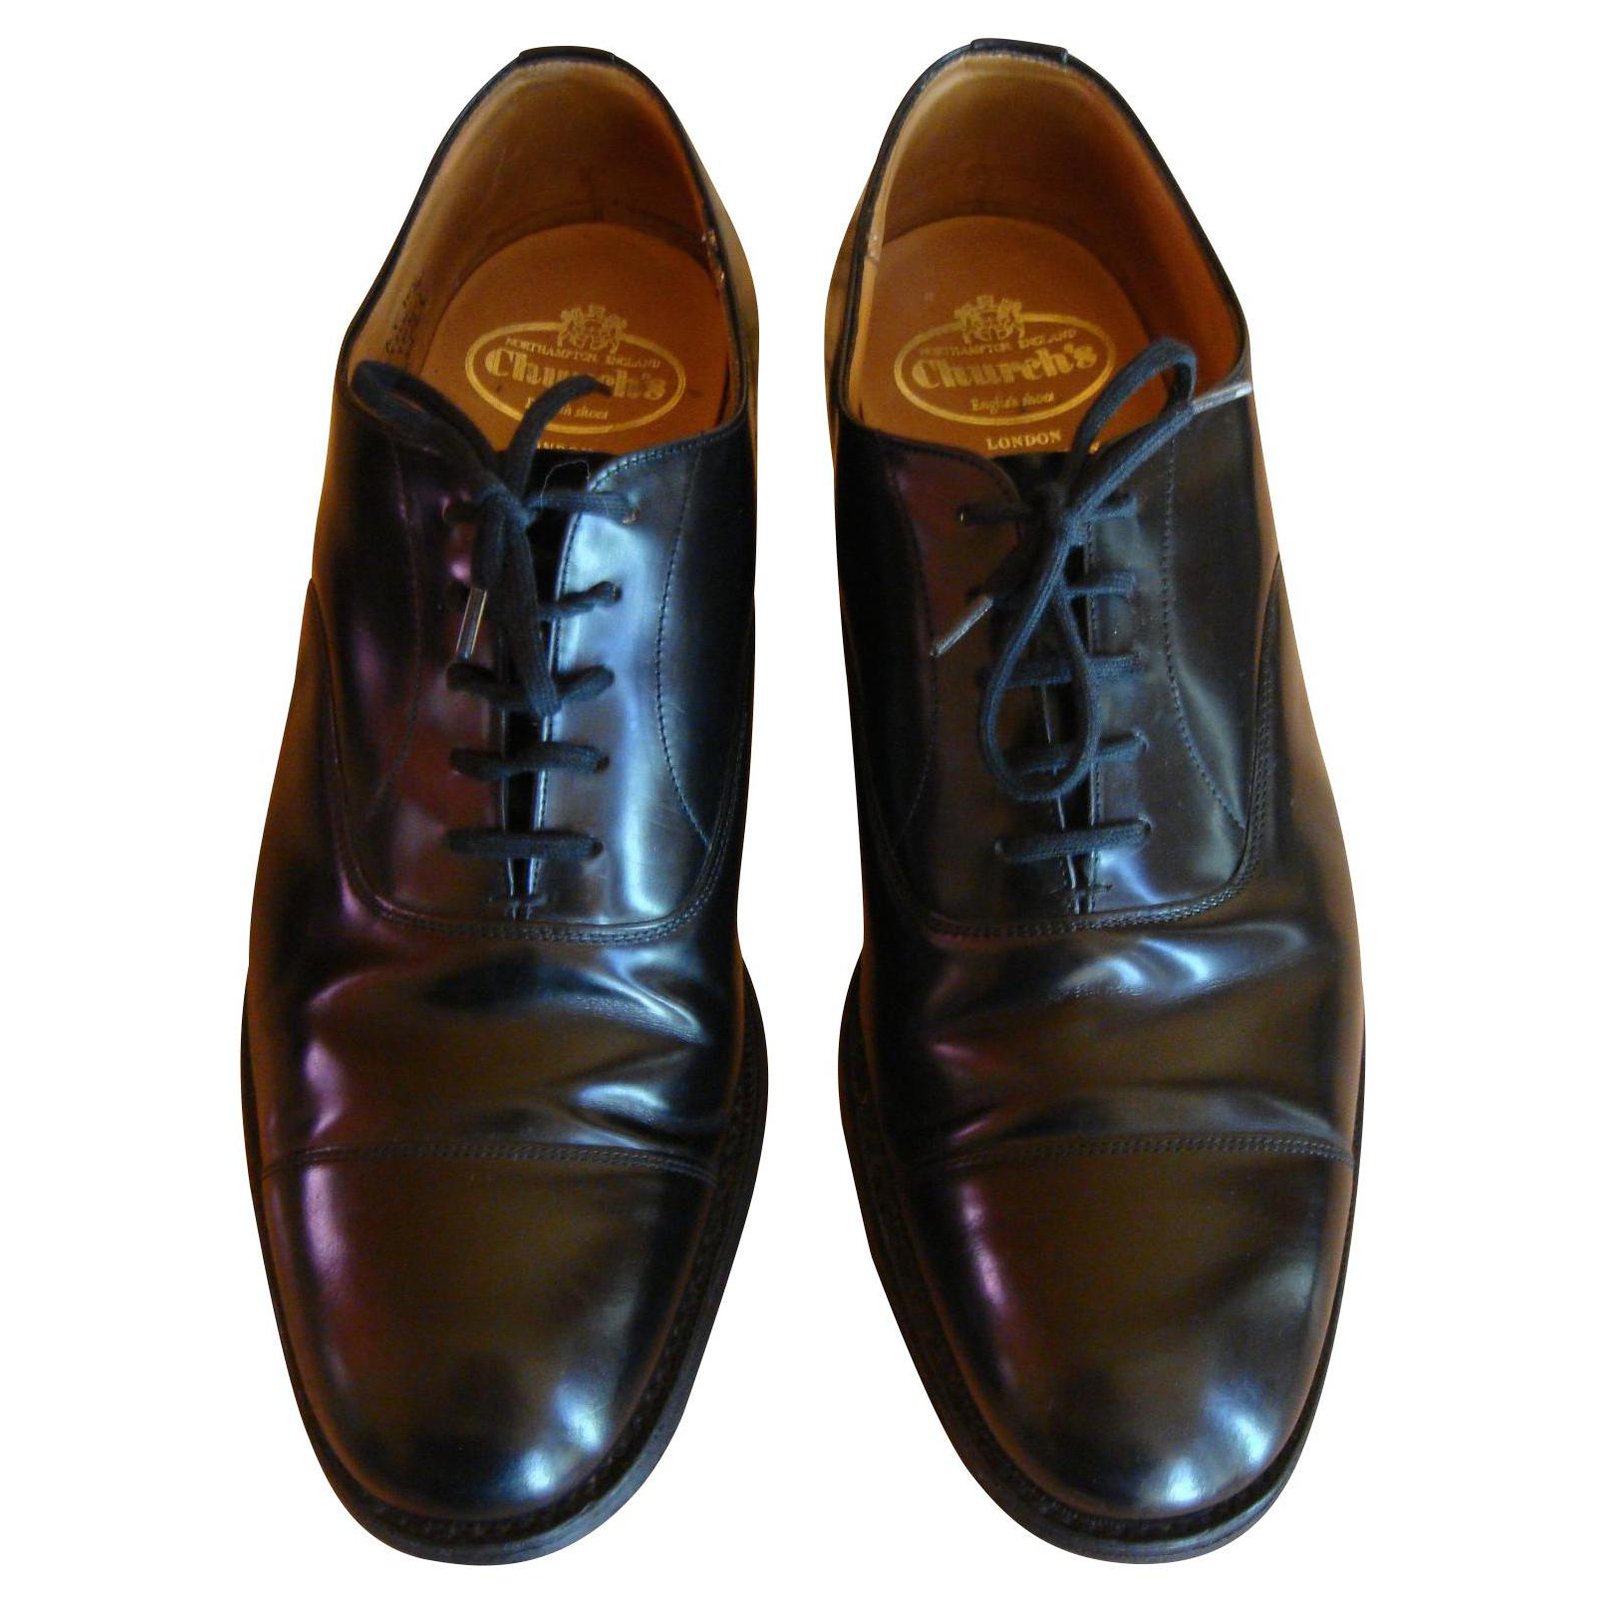 church's lancaster shoes